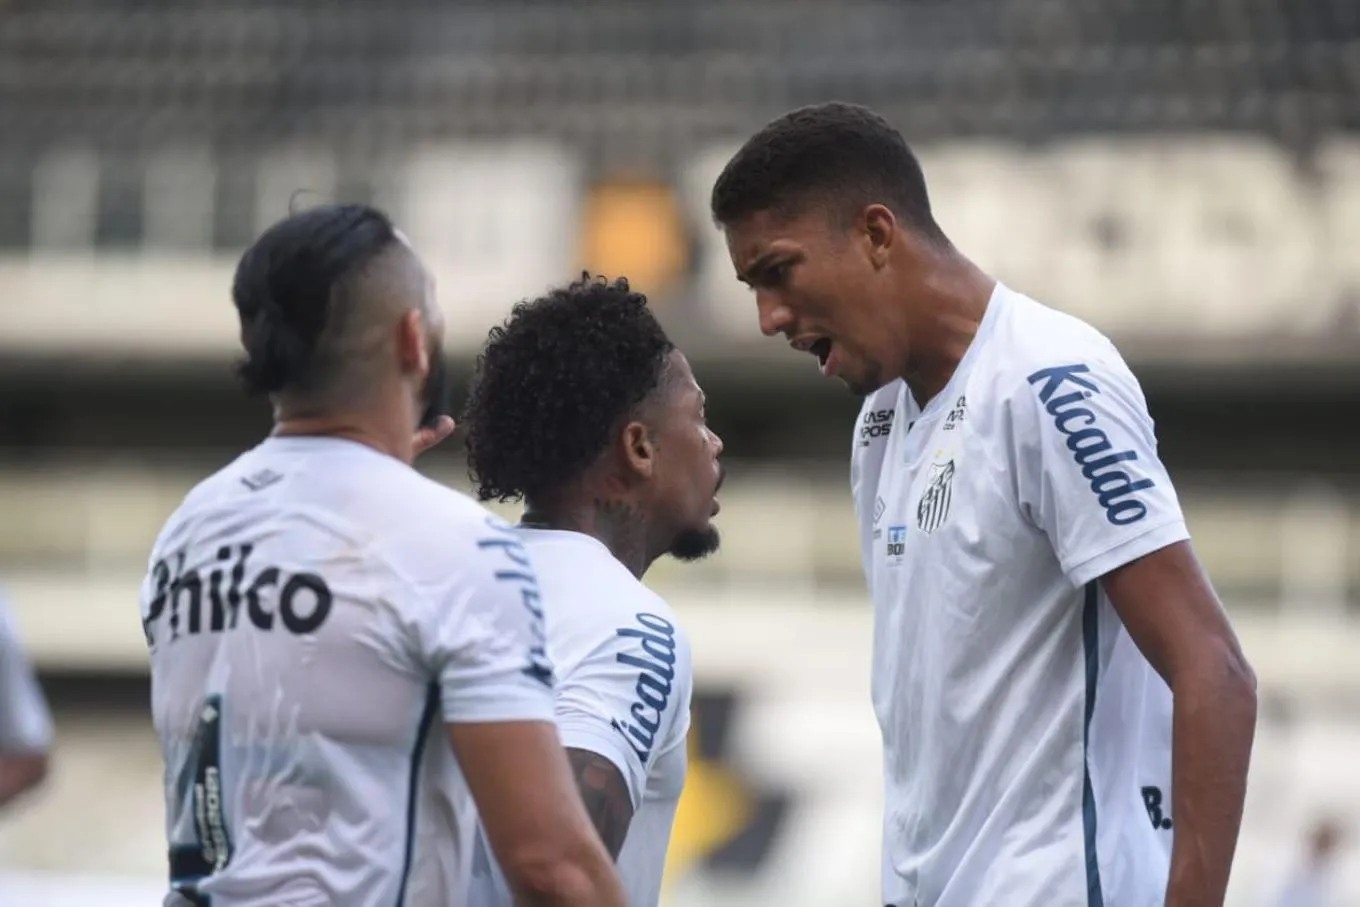 Gordura queimada: como returno nocauteou ainda líder Botafogo